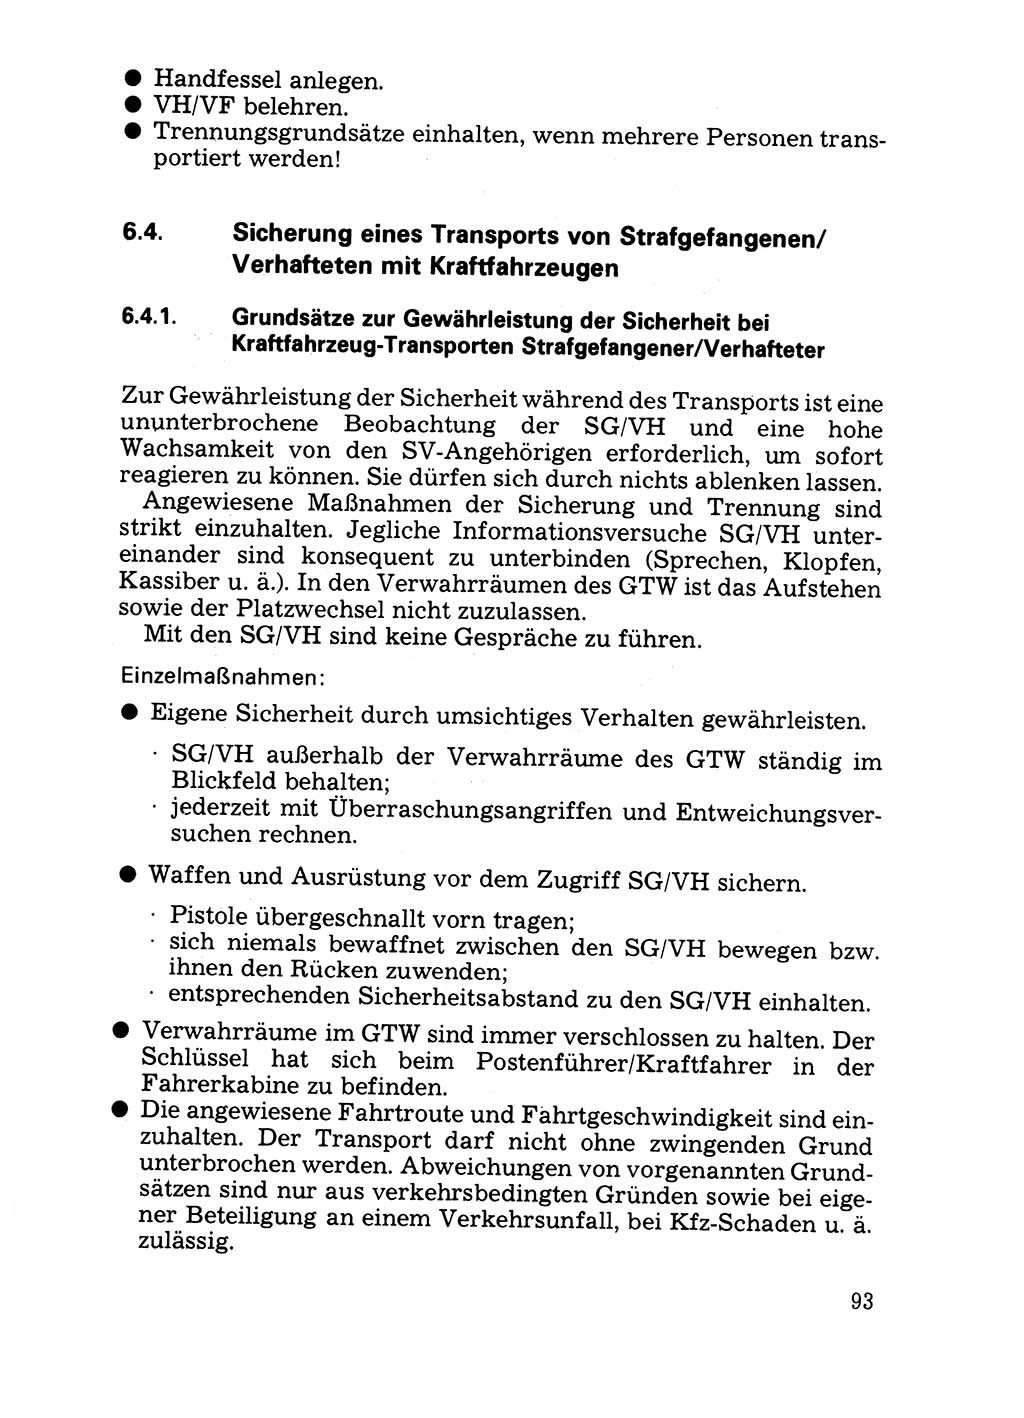 Handbuch für operative Dienste, Abteilung Strafvollzug (SV) [Ministerium des Innern (MdI) Deutsche Demokratische Republik (DDR)] 1981, Seite 93 (Hb. op. D. Abt. SV MdI DDR 1981, S. 93)